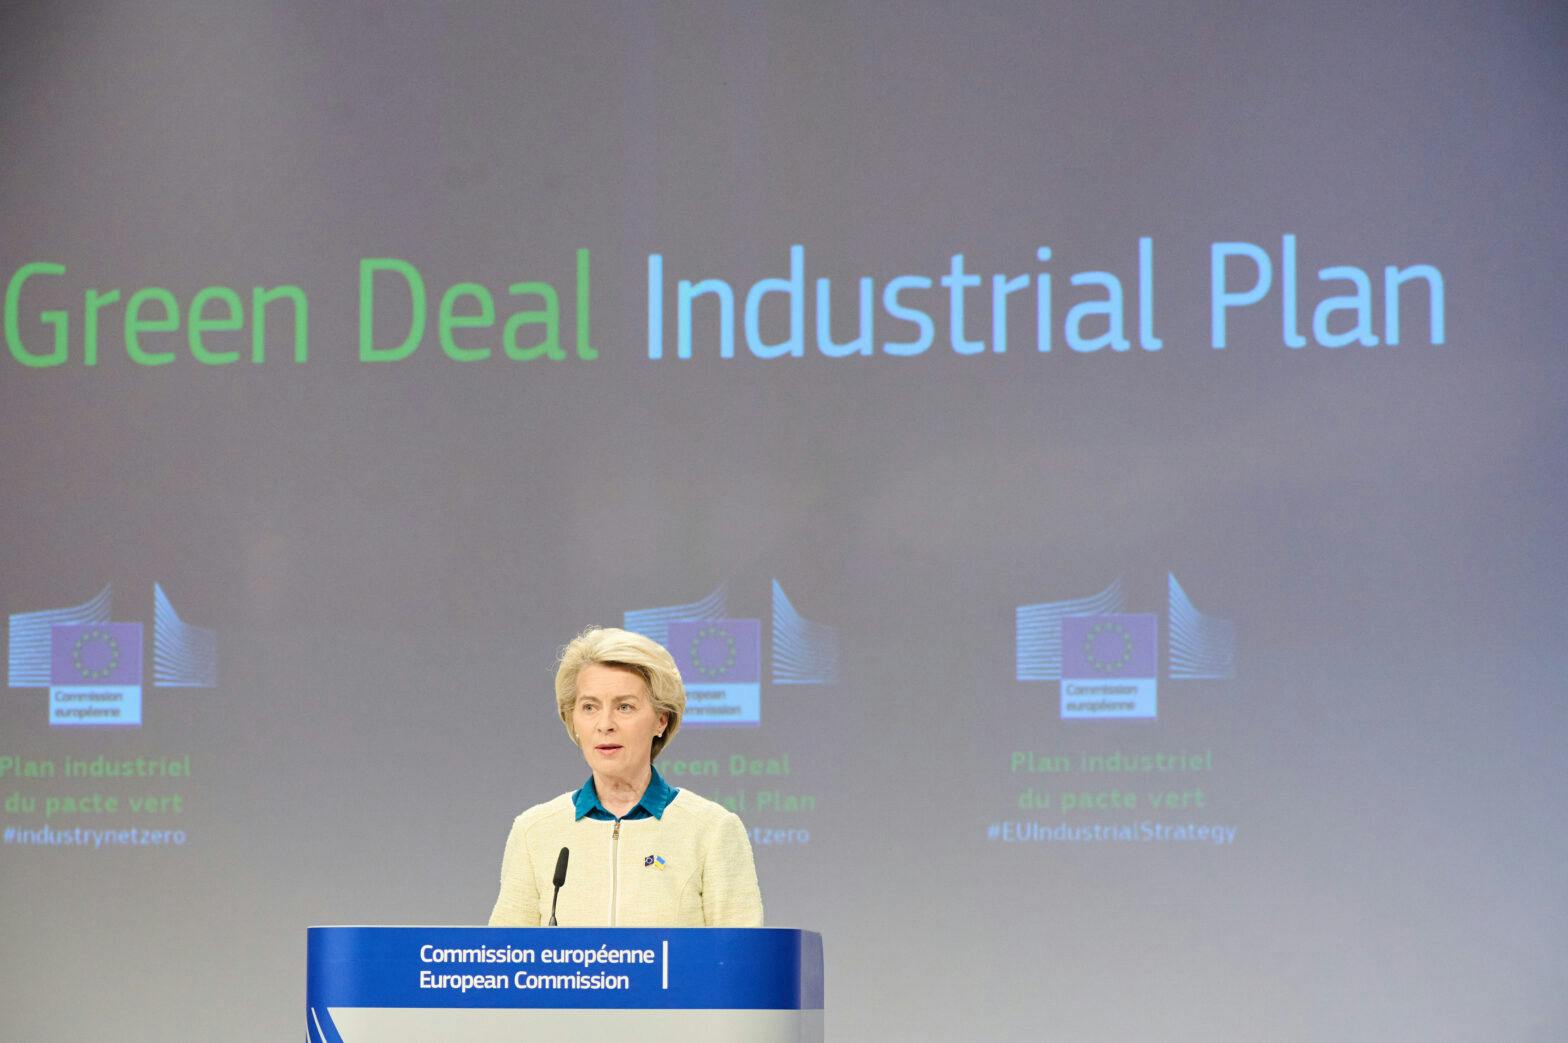 Conclusions de la réunion hebdomadaire de la Commission von der Leyen de Ursula von der Leyen, présidente de la Commission européenne, sur le plan industriel du pacte vert